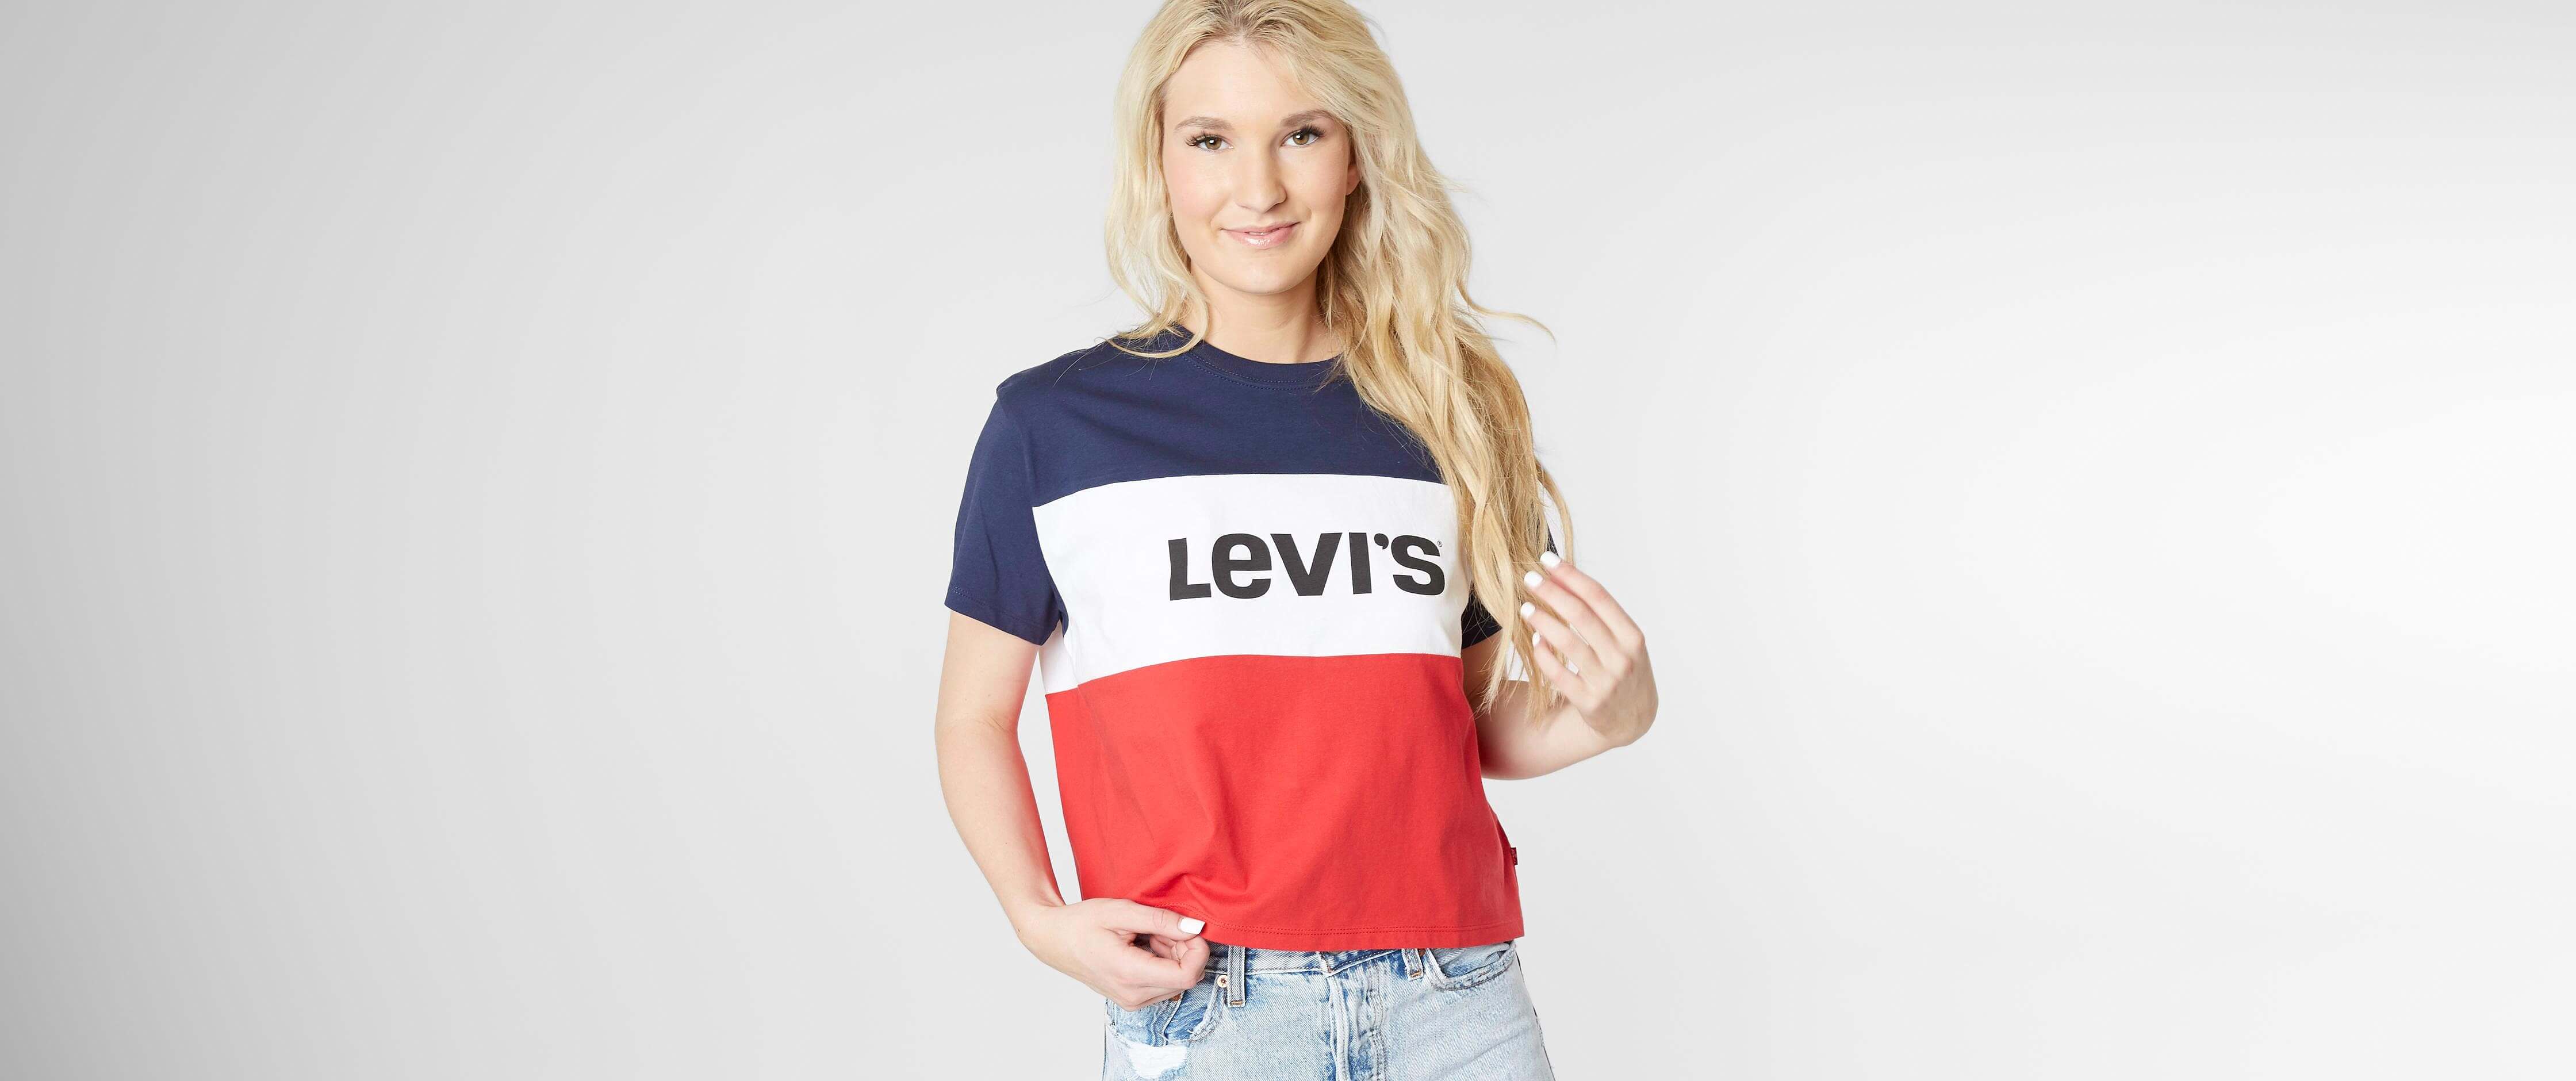 levis t shirt women